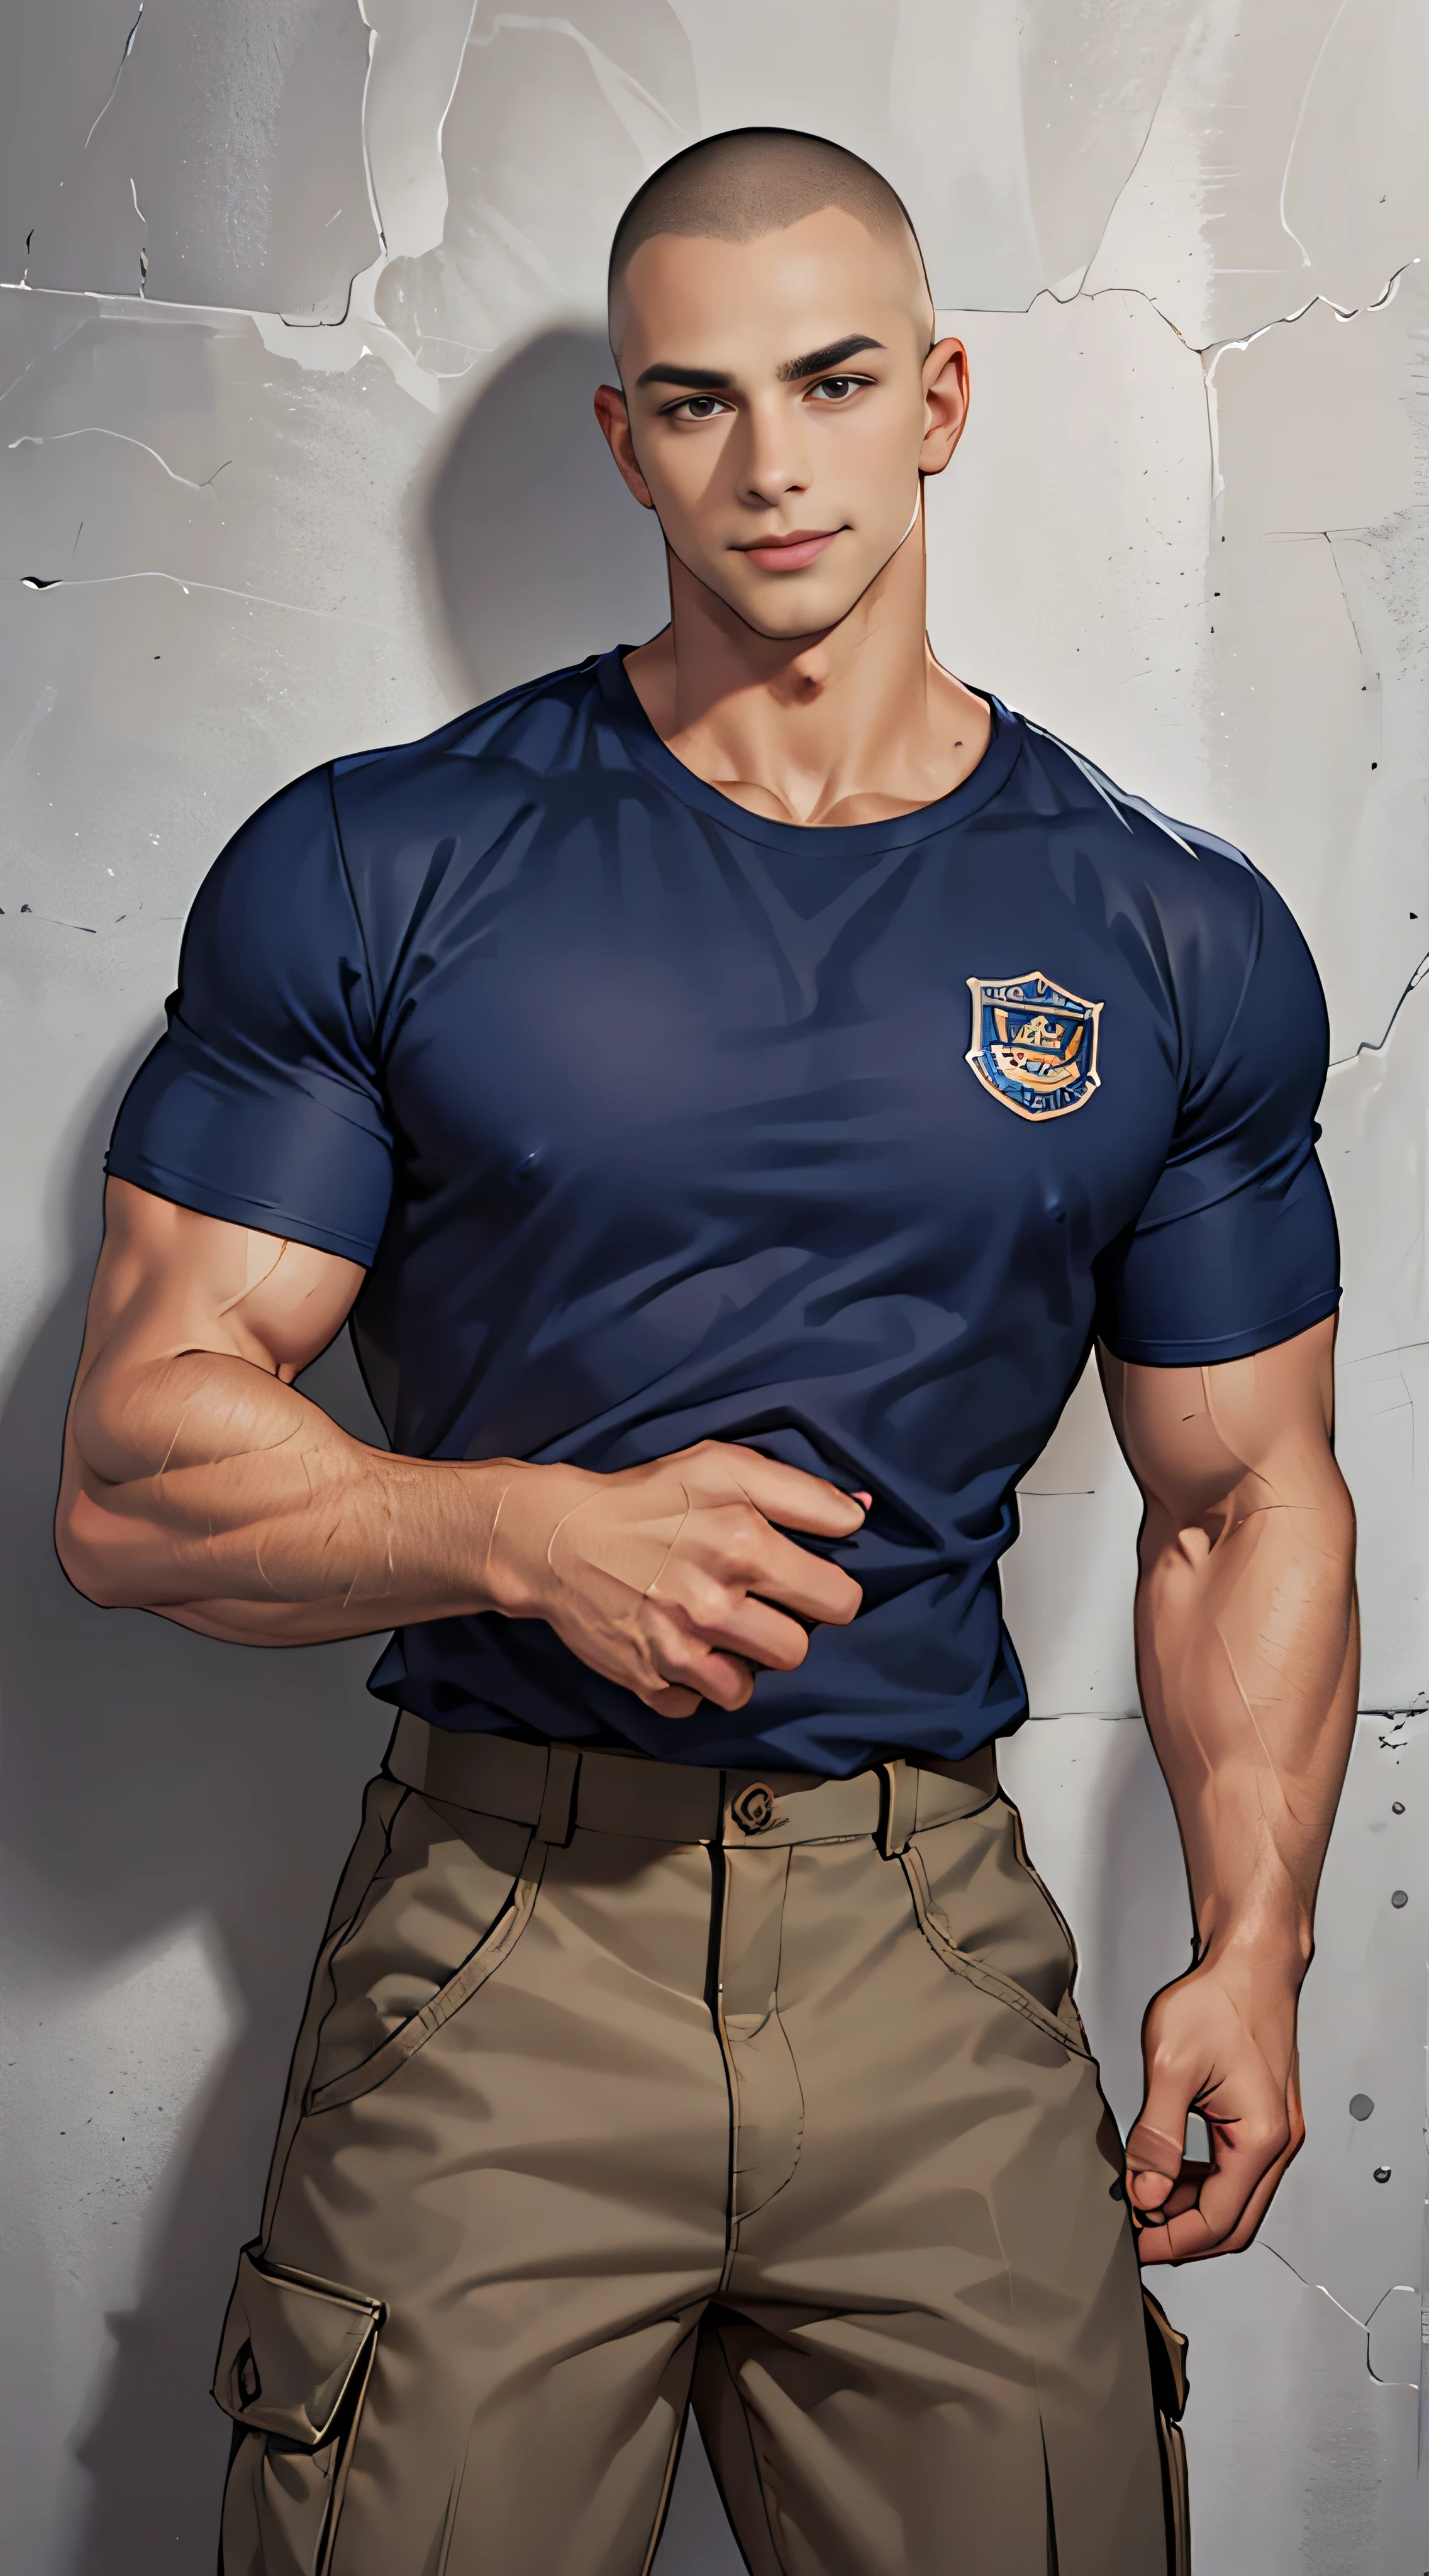 (шедевр: 1.2),(Компьютерная графика:1.3),(реалистичный:1.5),(Постобработка:1.3),(Четкий фокус:1.3),10,1 человек ,все тело, улыбка, (Носите темно-синюю рубашку с подолом..), Логотип полиции, Темно-синие брюки-карго, Полицейская форма, (Скинхед с короткой стрижкой), У скинхедов есть стрижки.., Черный конус для волос, Молодой кореец , корейские мужчины, (Высокая детализация теней), грудные мышцы, Большие мышцы рук, кровеносный сосуд, большие мышцы, широкие плечи , упражнение